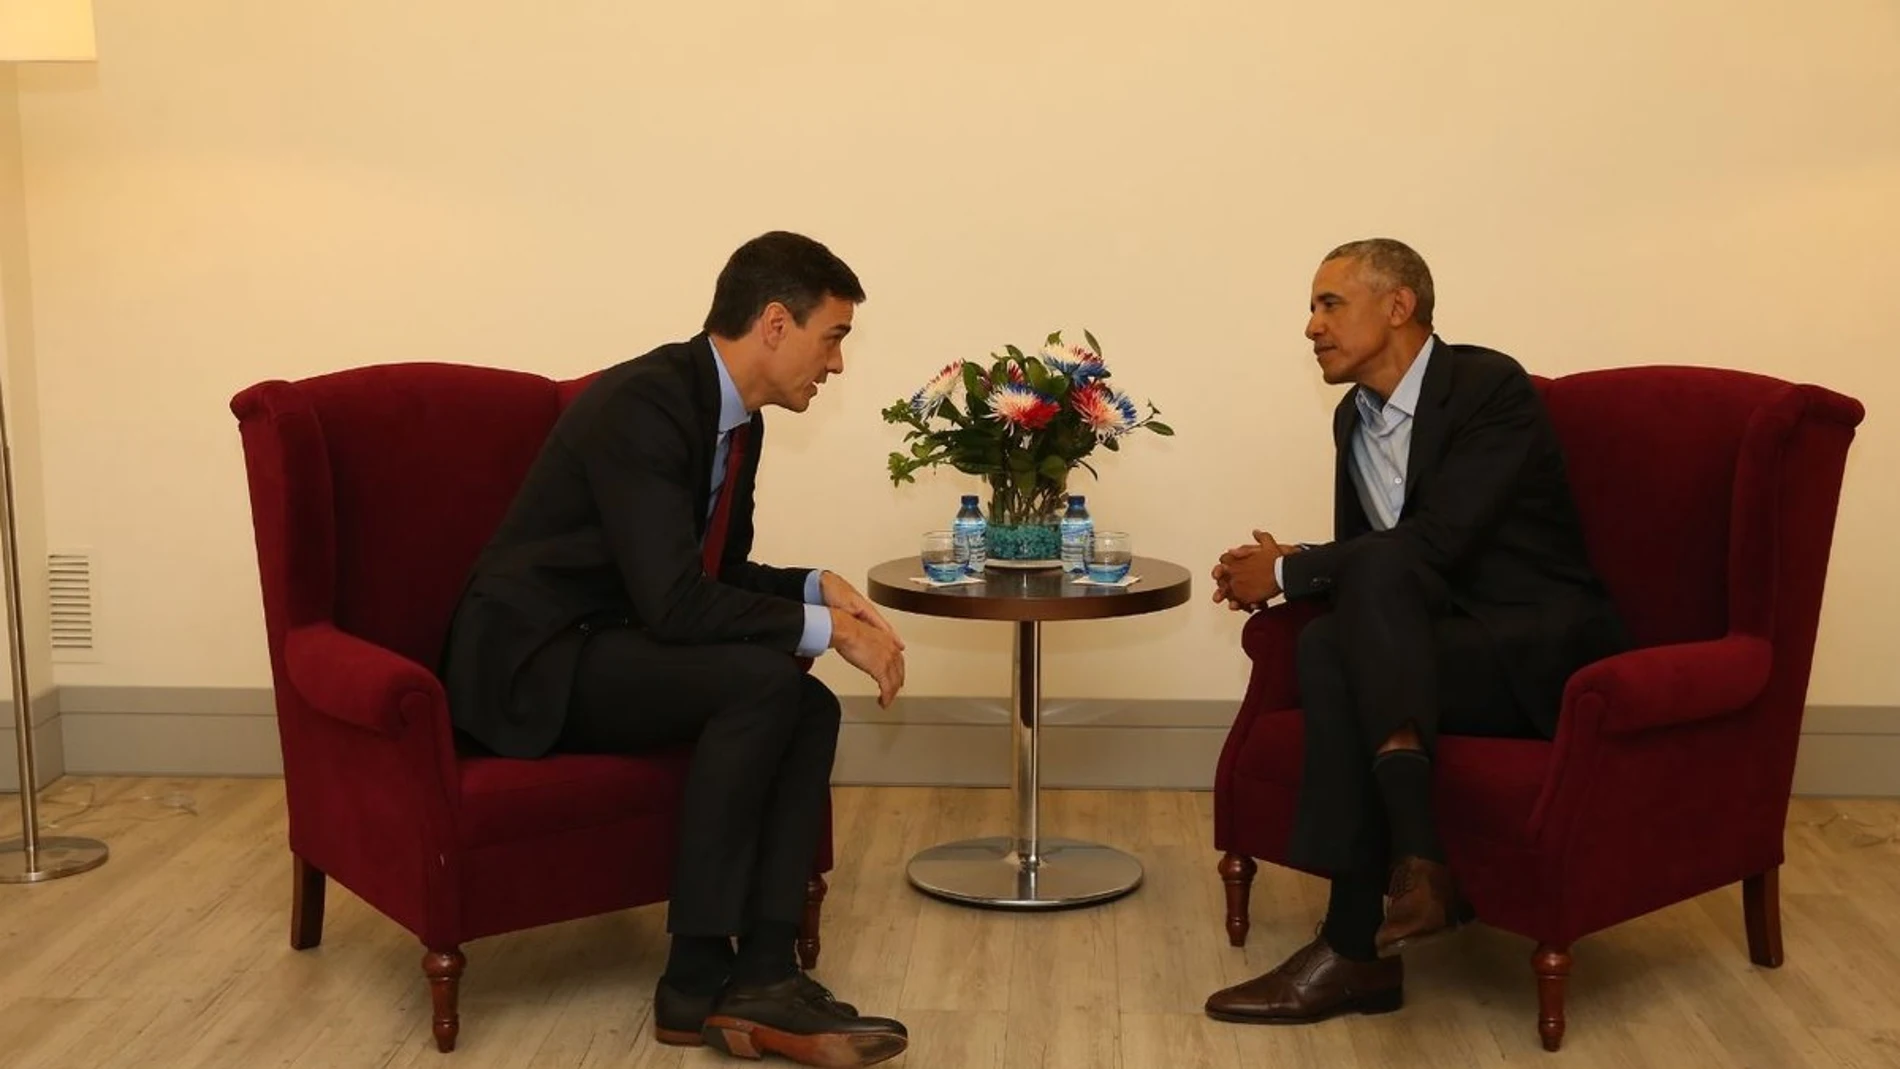 El presidente del gobierno, Pedro Sánchez, junto al expresidente Barack Obama en una reunión en Madrid / Twitter